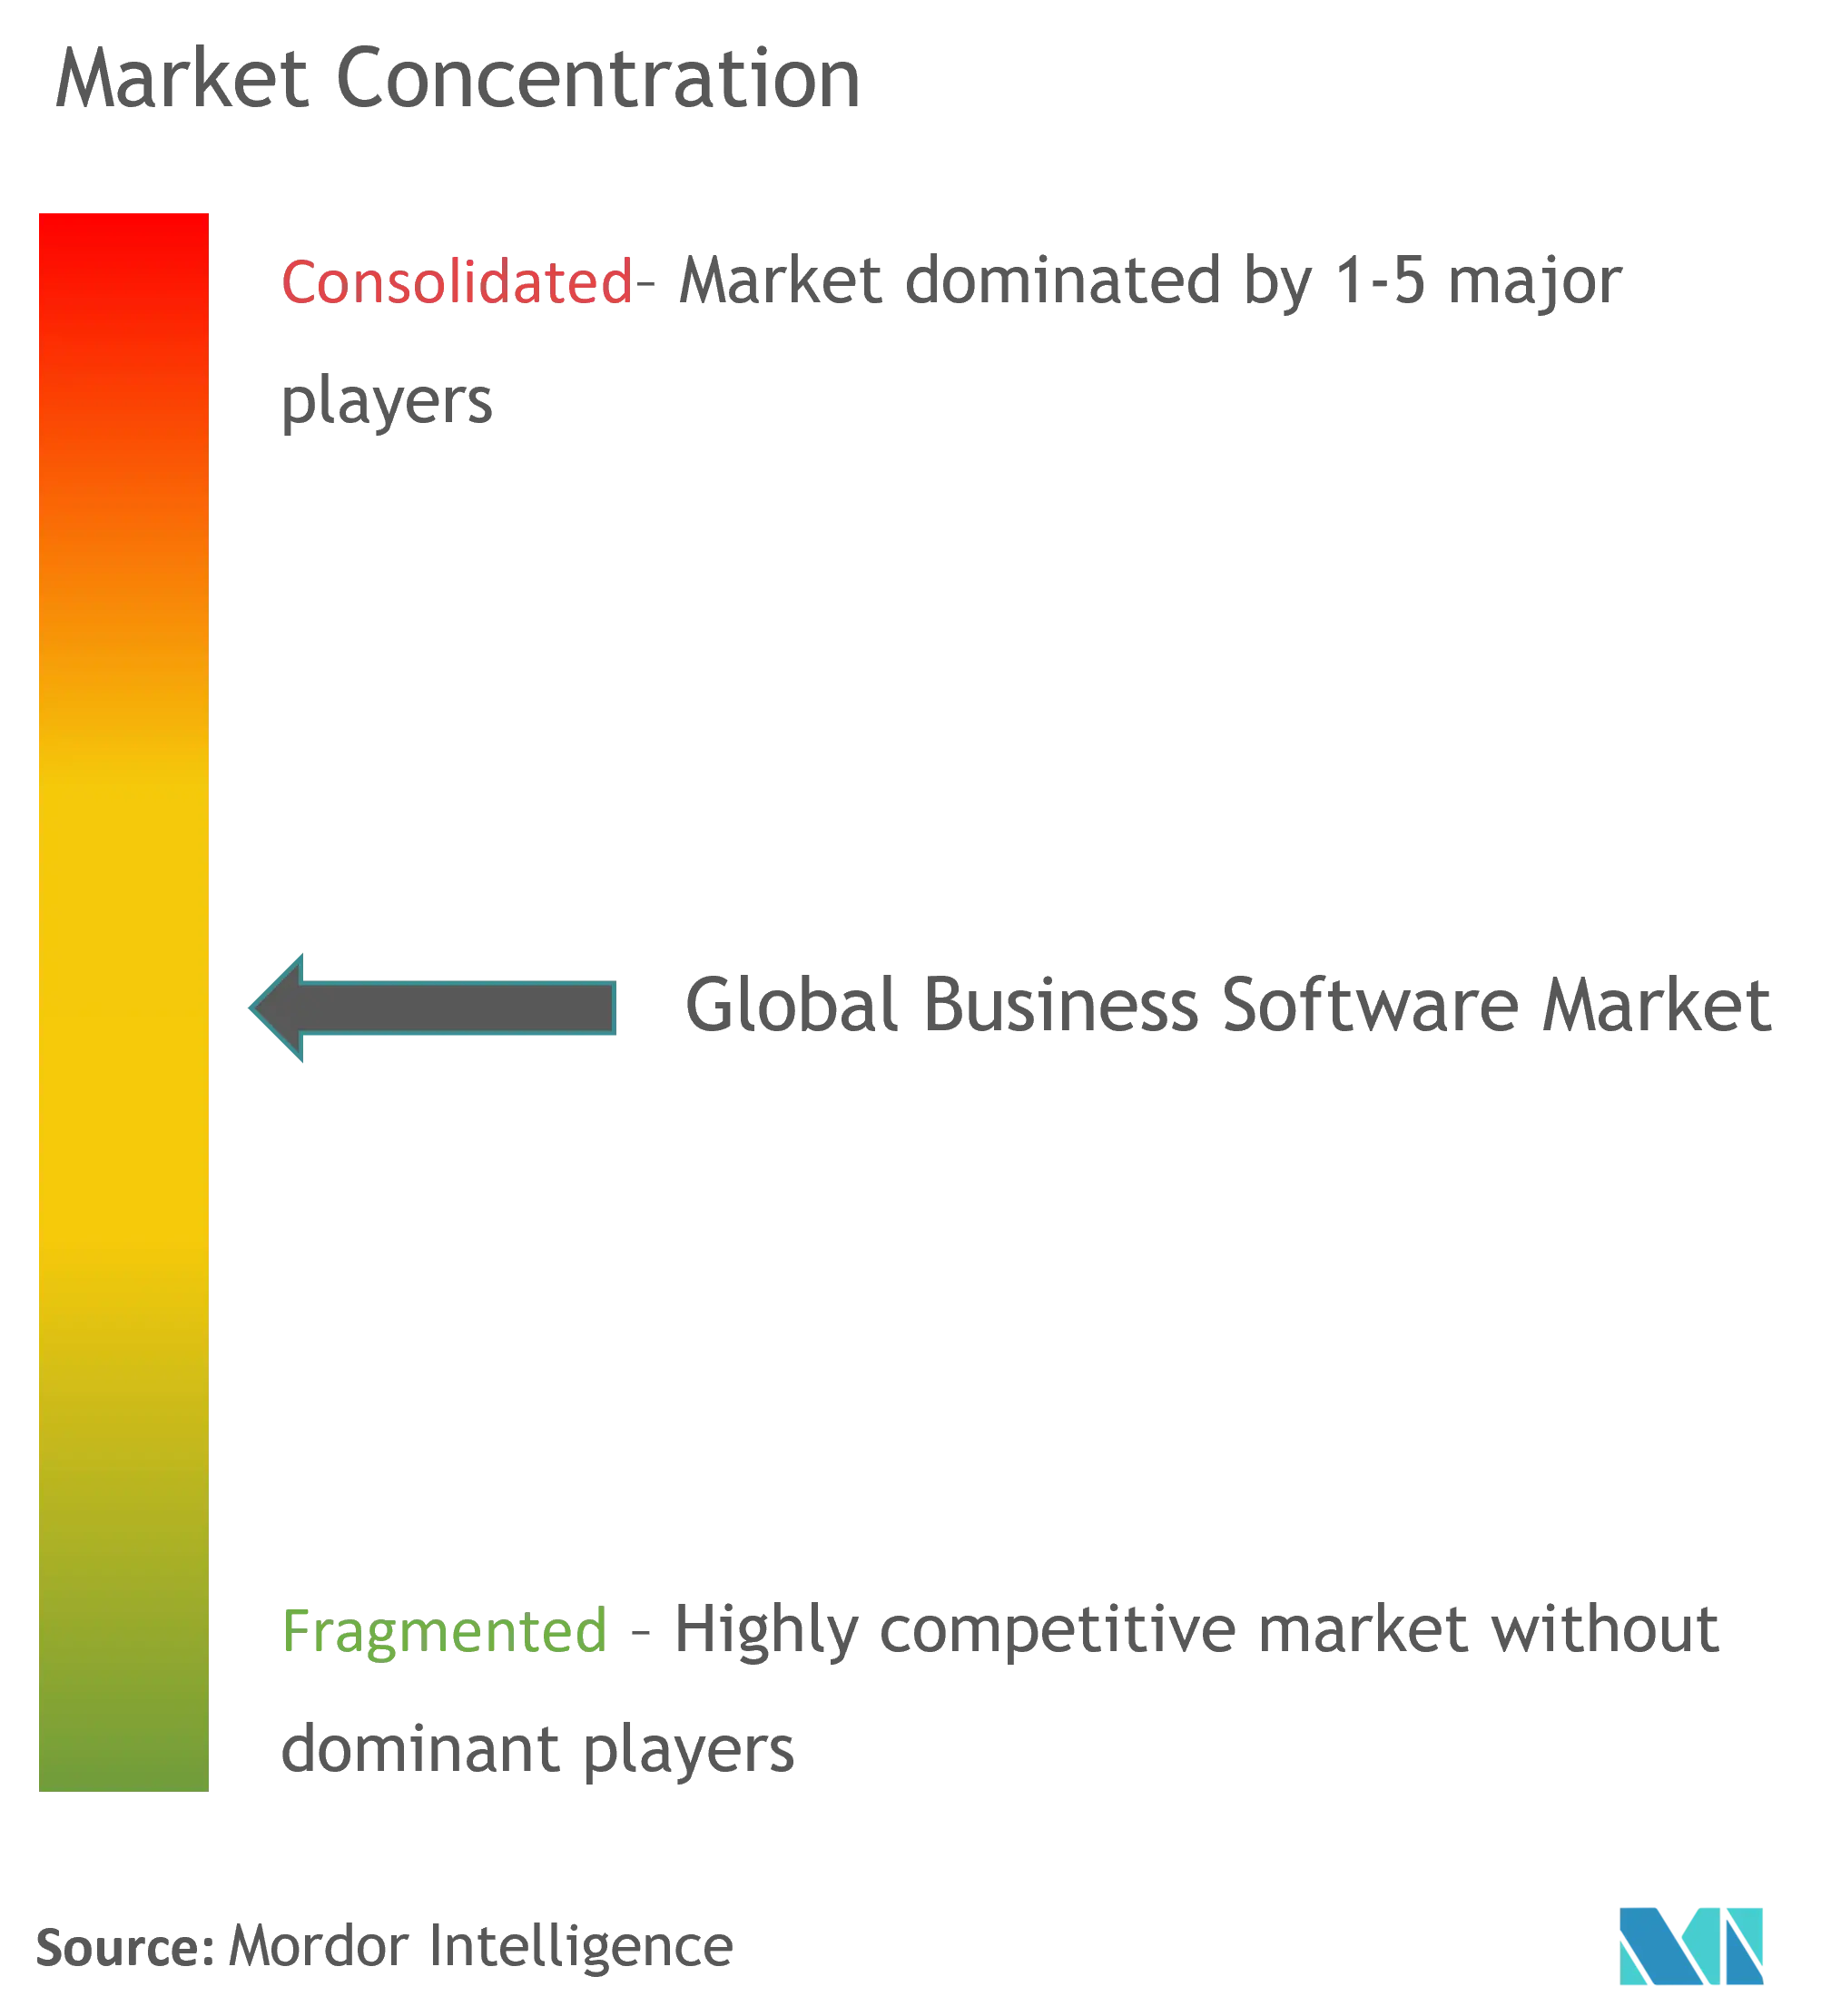 Global Business Software Market - Market Concentration.png